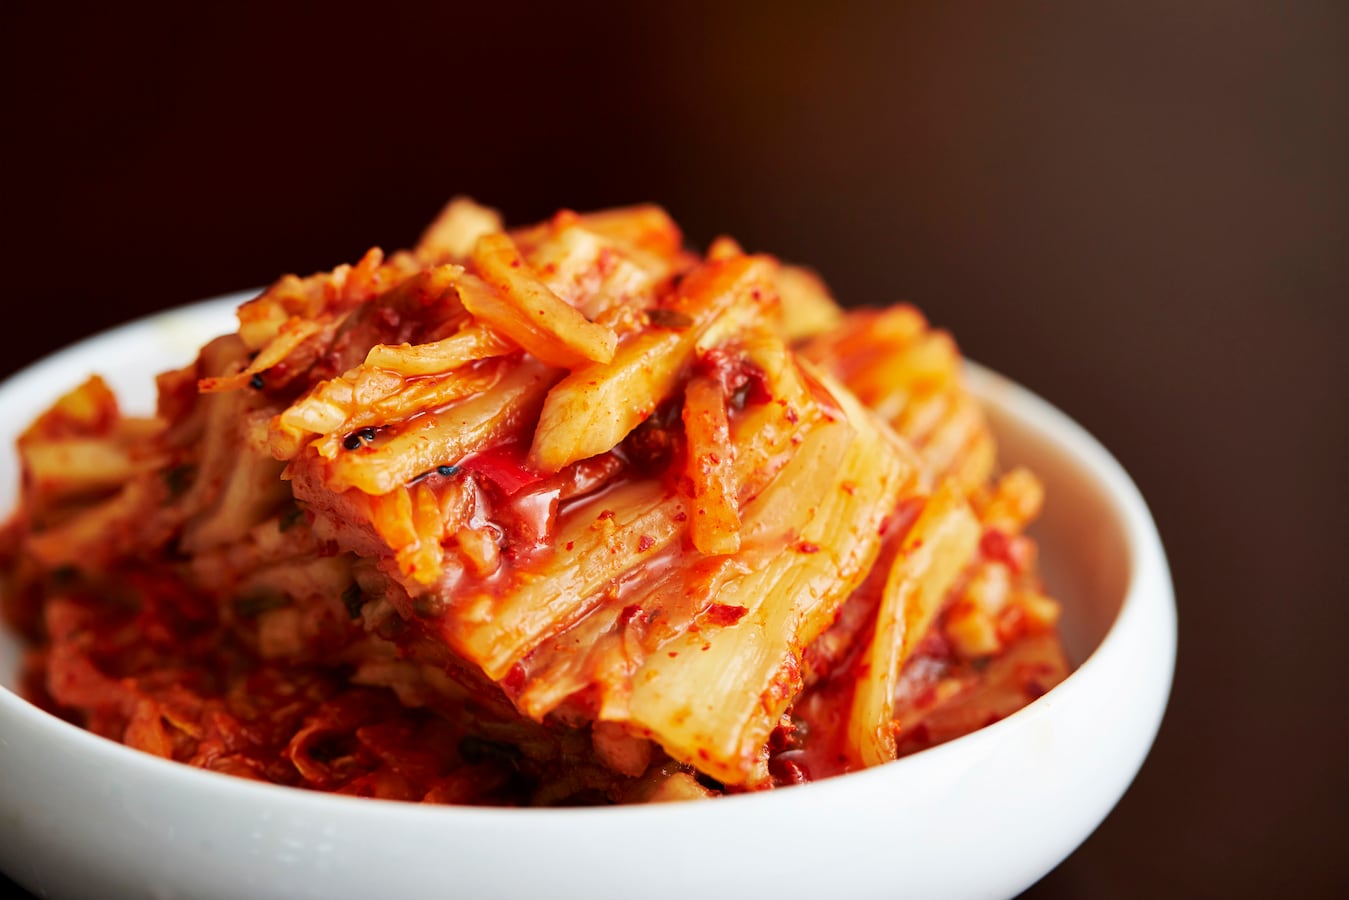 韓国料理は痩せる 韓国美人の食習慣から学ぶダイエット 食事ダイエット All About